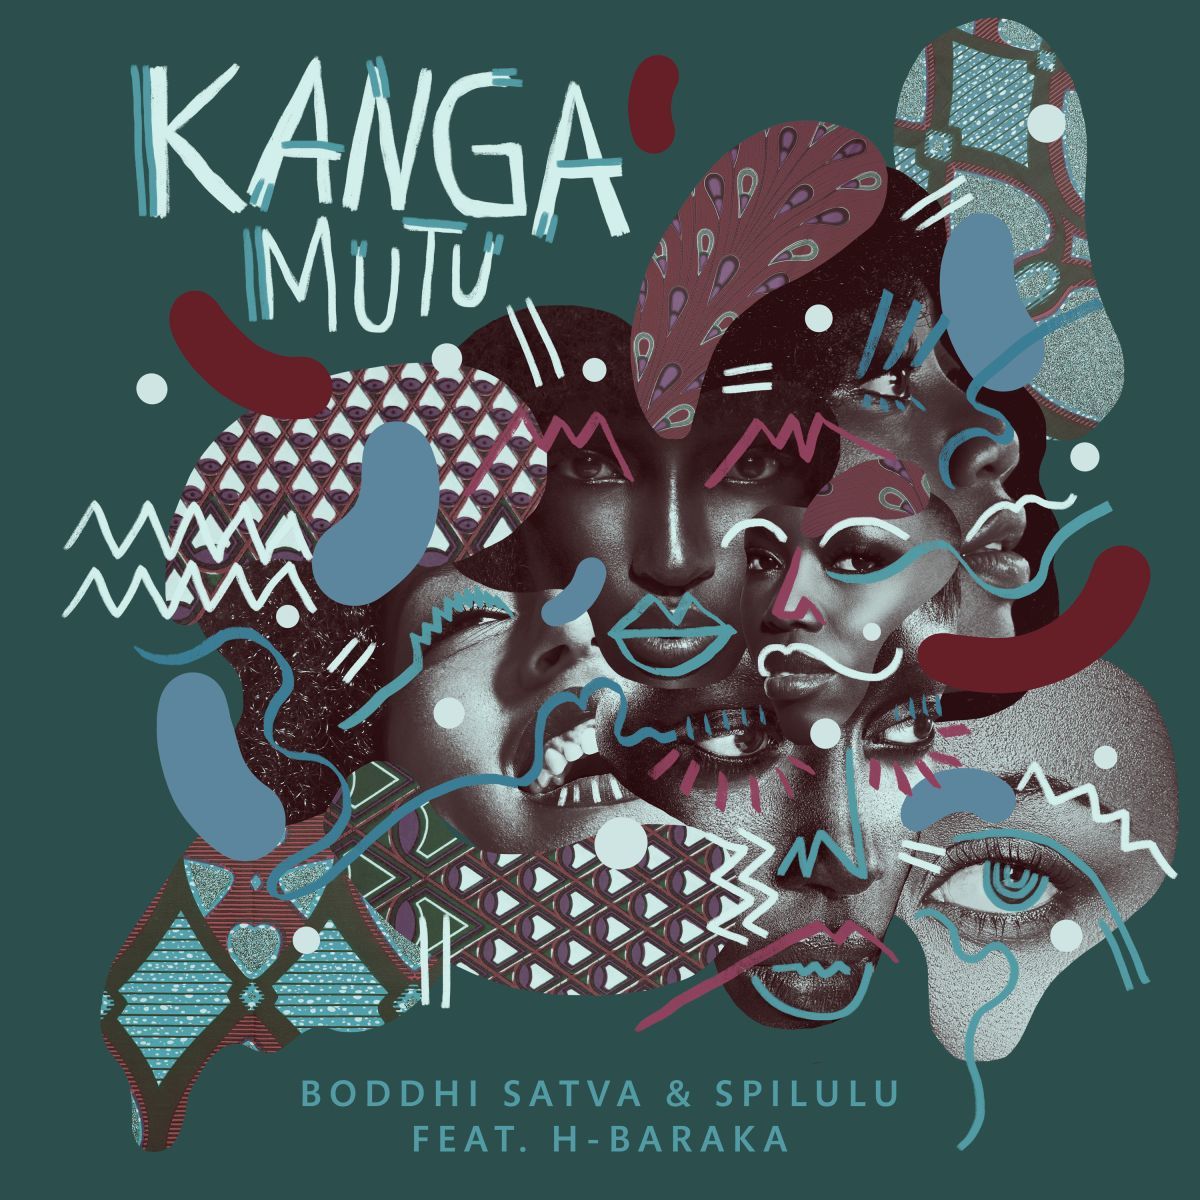 Boddhi Satva - Kanga Mutu (feat. Spilulu & H-Baraka) / Offering Recordings